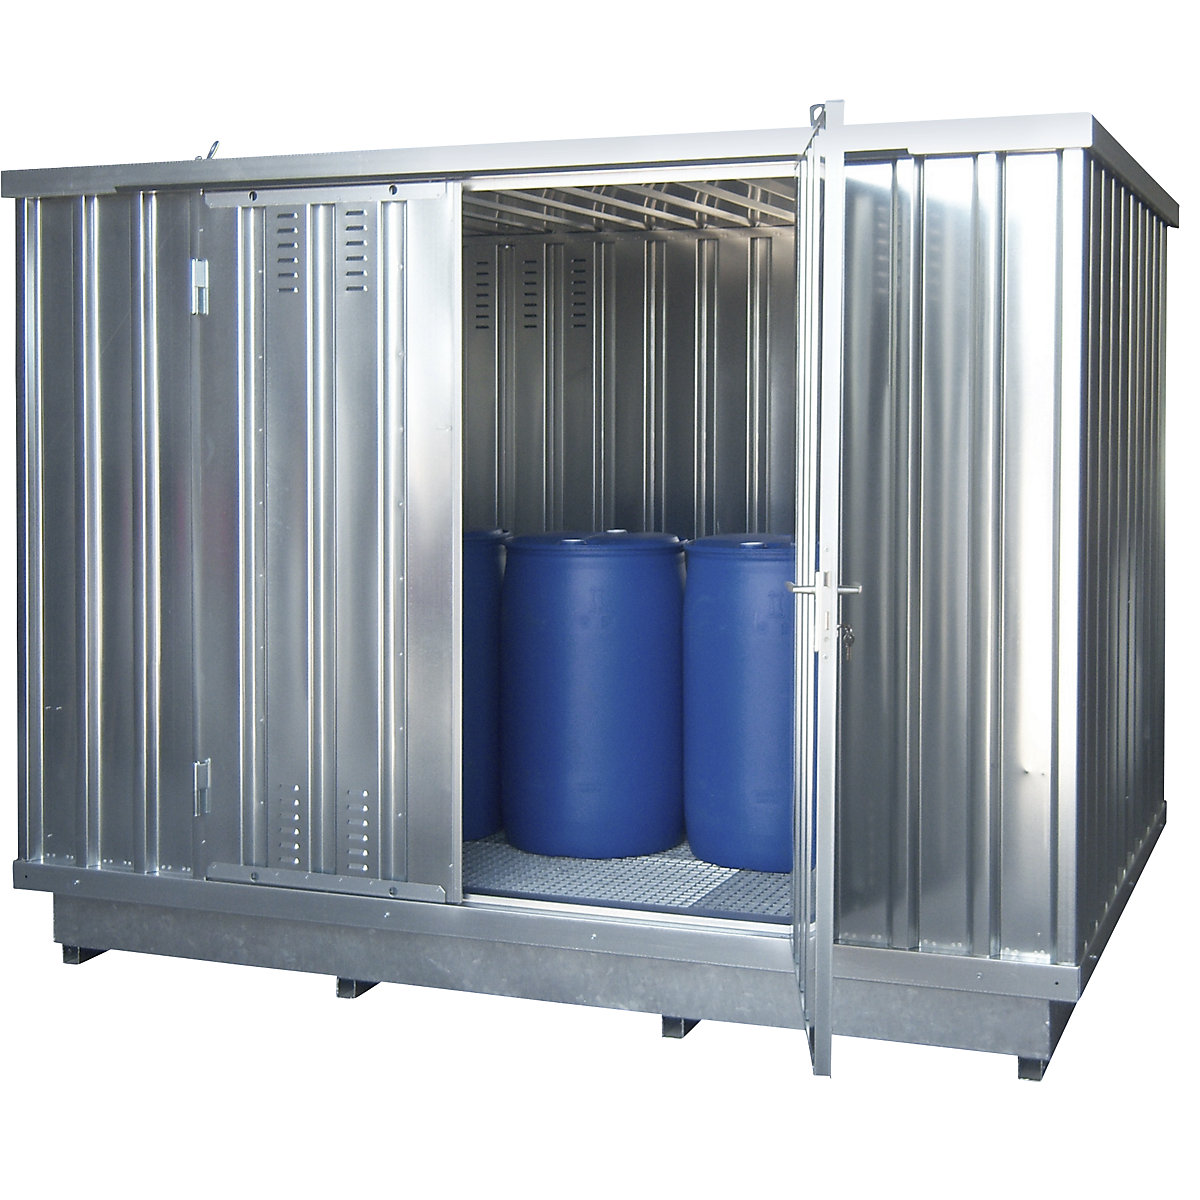 Gefahrstoff-Lagercontainer für gewässergefährdende Medien, Außen-HxBxT 2385 x 3075 x 2075 mm, verzinkt